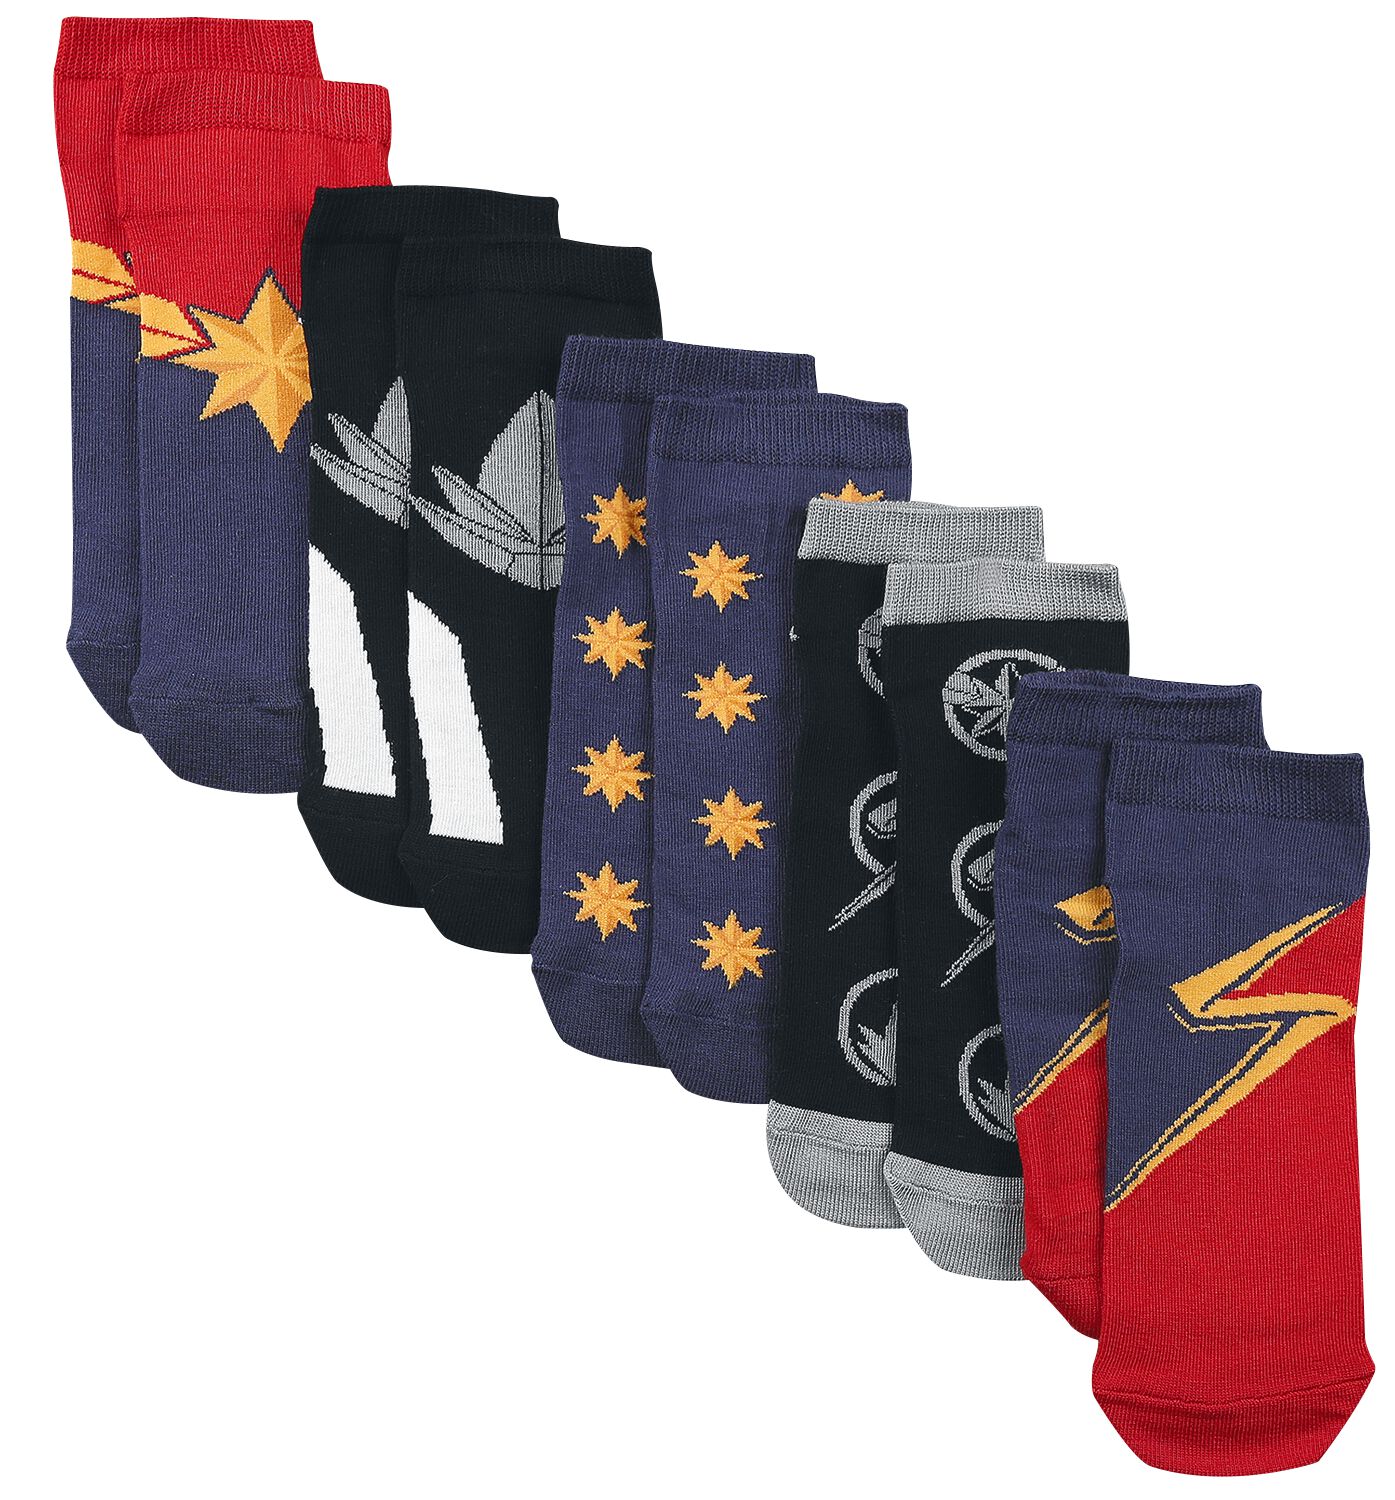 The Marvels - Marvel Socken - EU35-38 bis EU39-42 - für Damen - Größe EU 35-38 - multicolor  - EMP exklusives Merchandise! von The Marvels